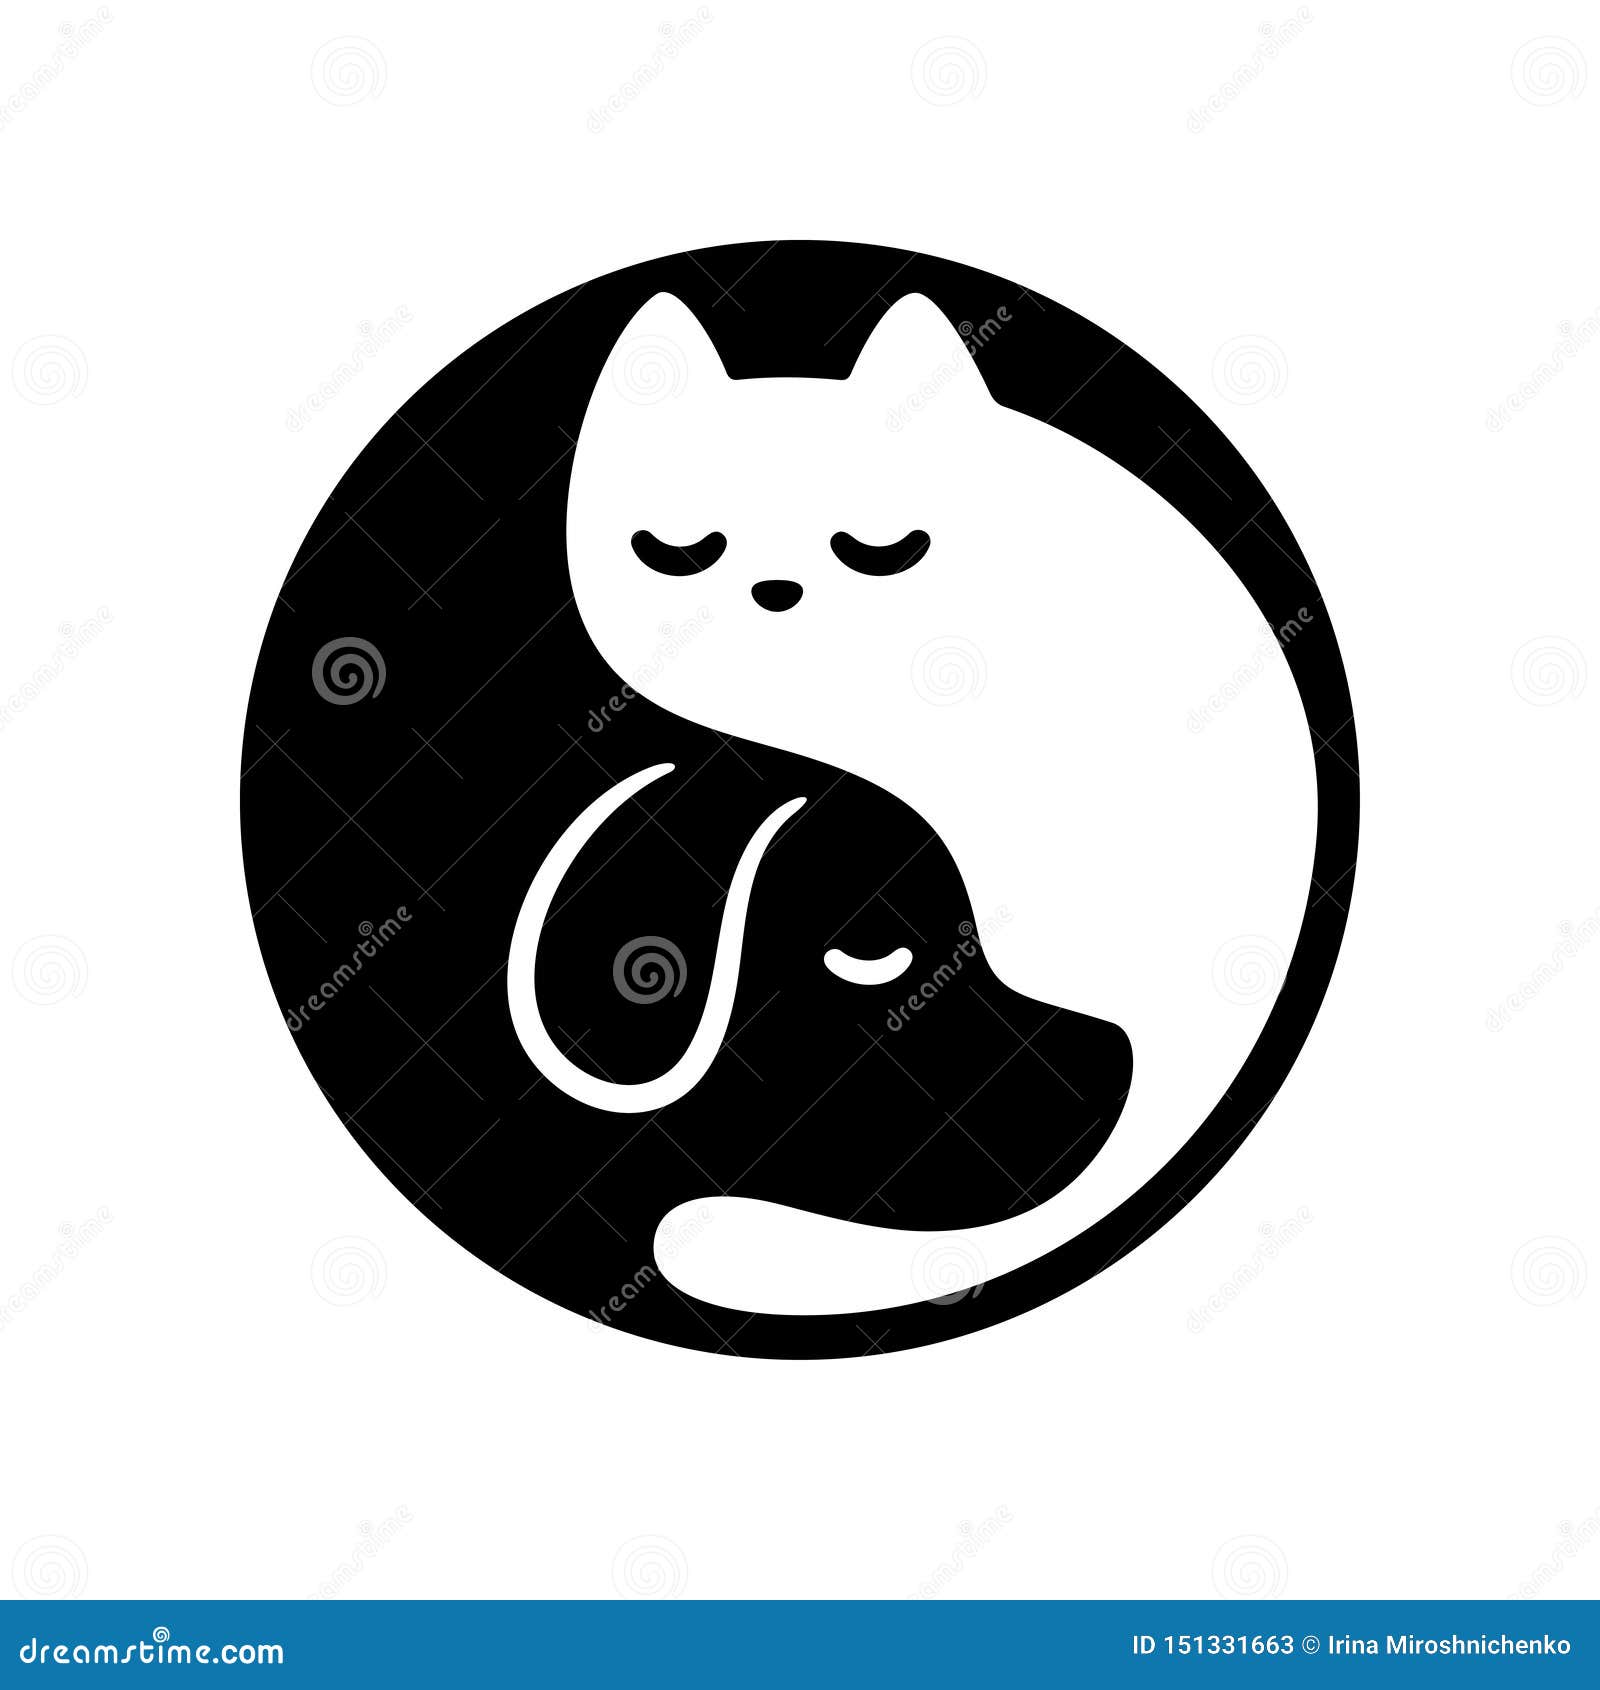 Cat Dog Yin Yang Stock Vector Illustration Of Logo 151331663